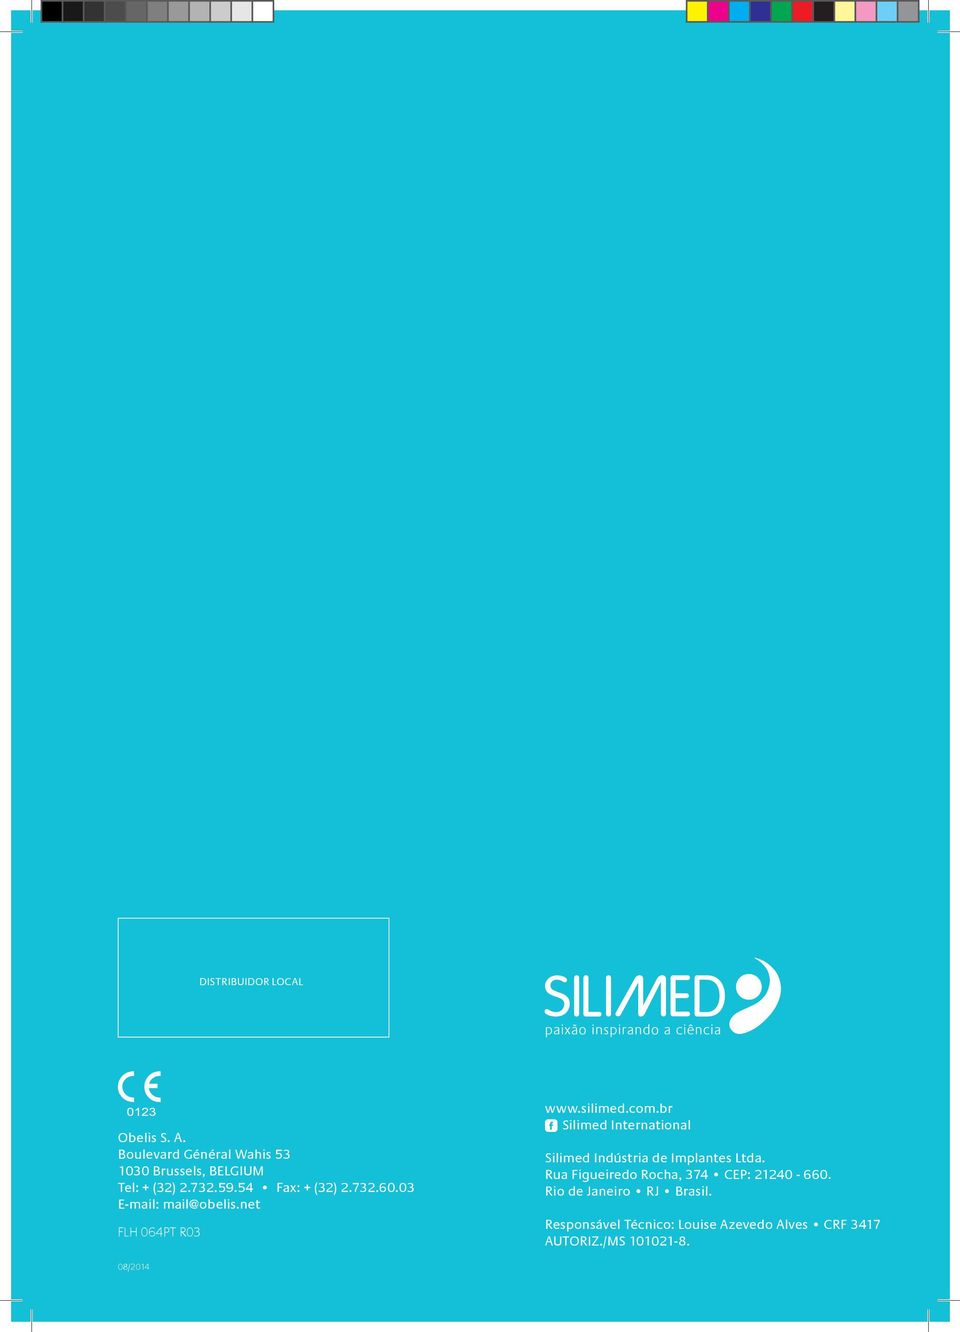 br Silimed International Silimed Indústria de Implantes Ltda.